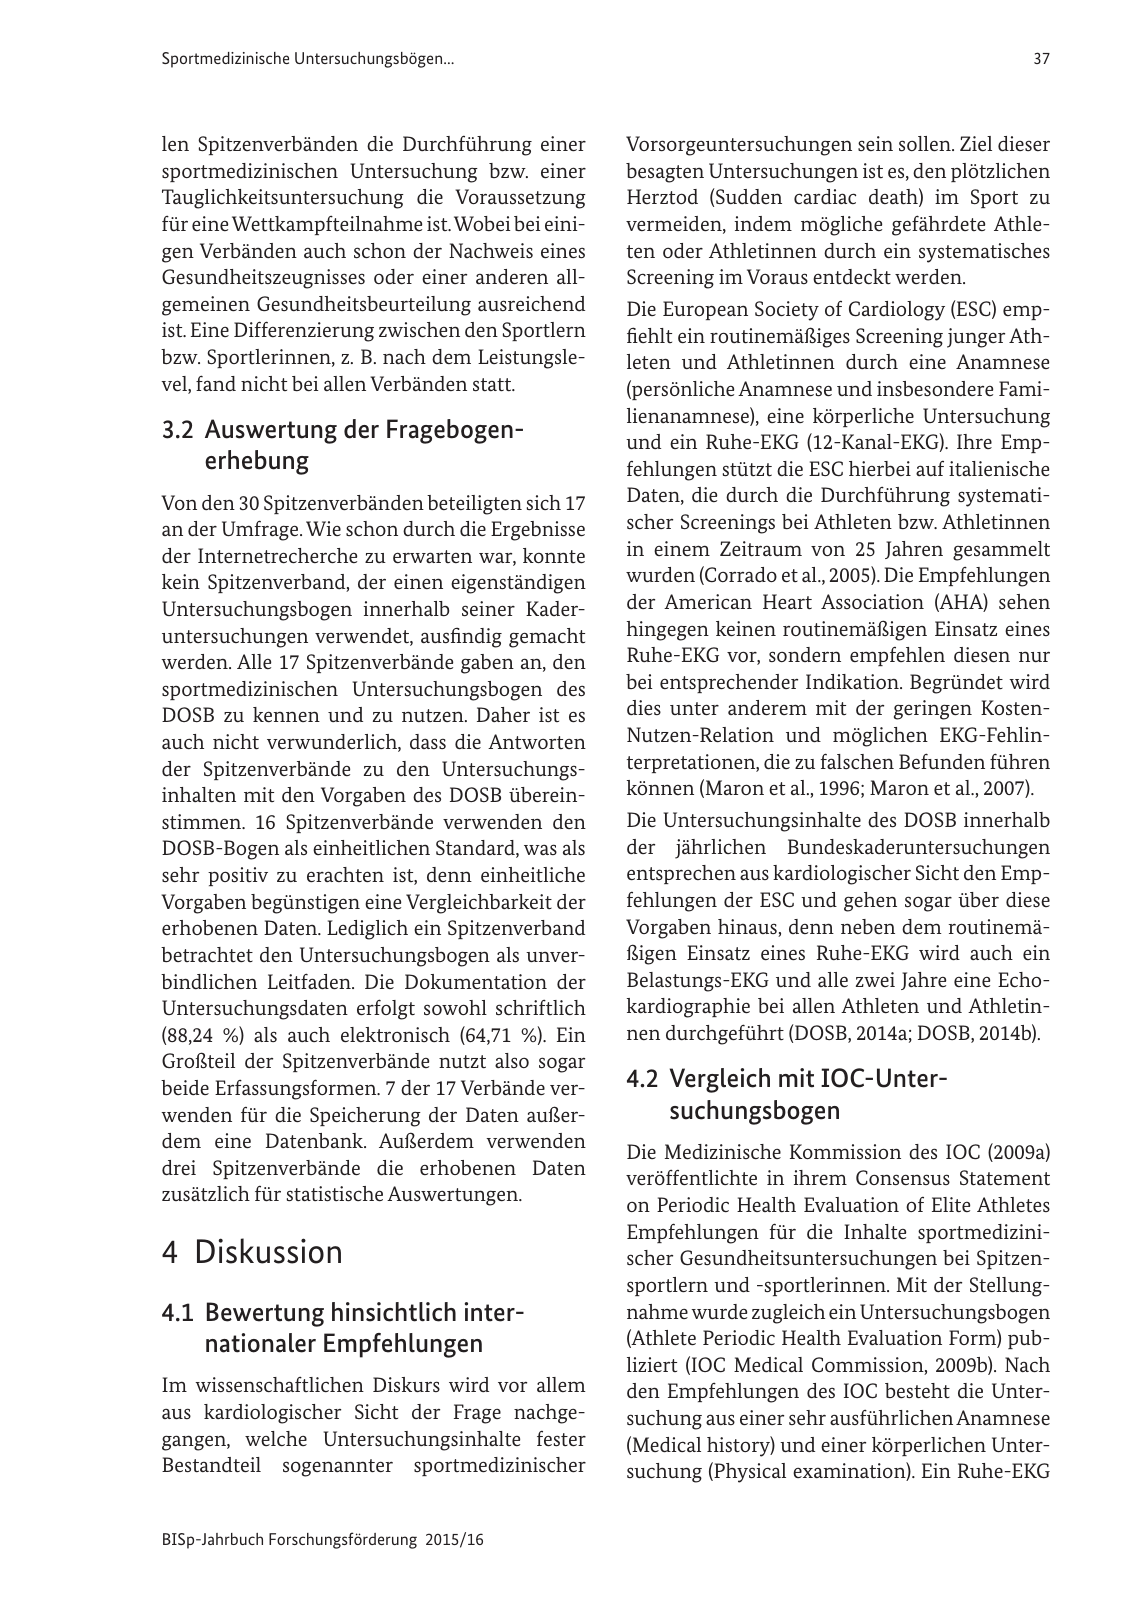 Vorschau BISp-Jahrbuch Forschungsförderung 2015/16 Seite 39